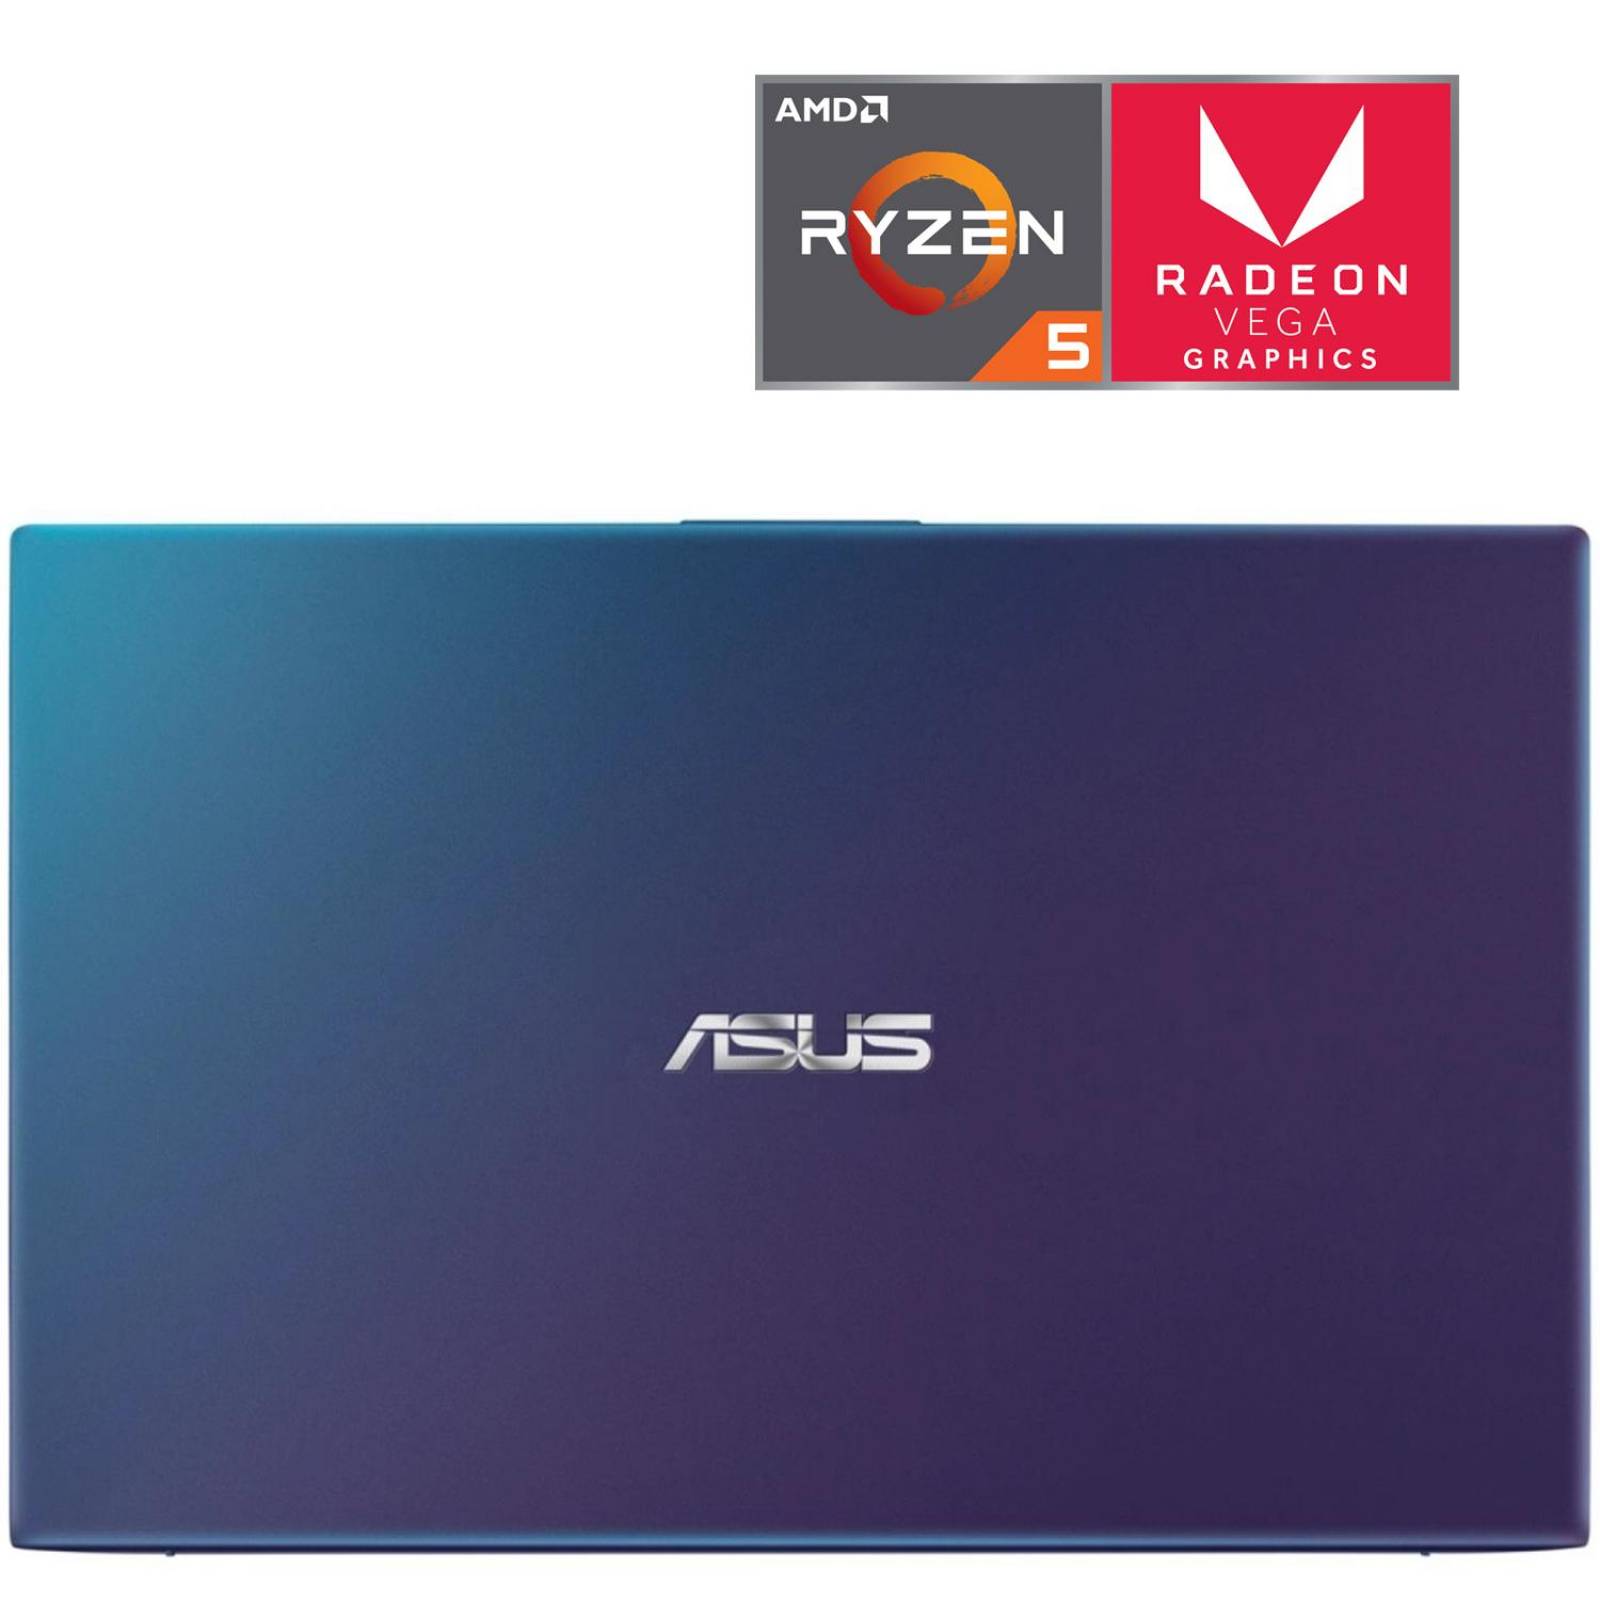 Laptop Gamer ASUS A412DA-BV235T Ryzen 5 3500U 8GB 512GB 14 Win10 Azul 